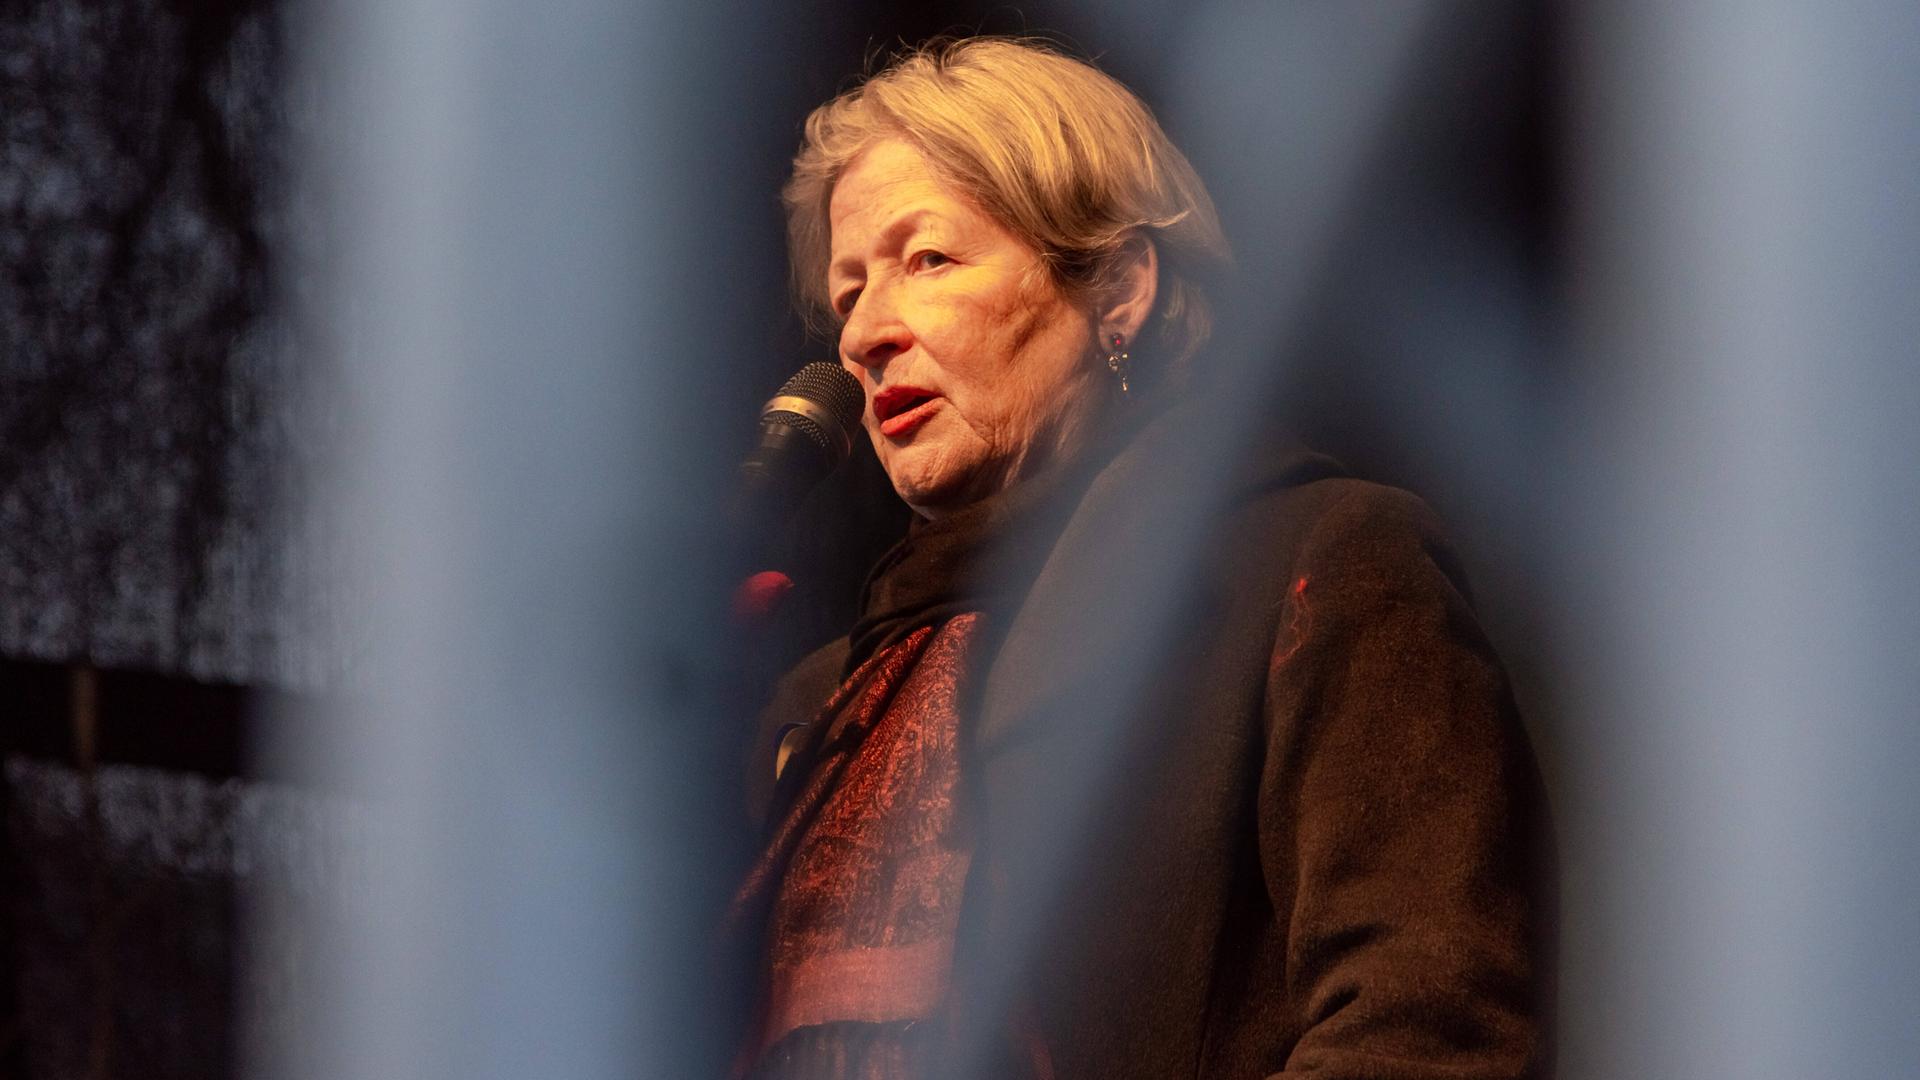 Die österreichische Schriftstellerin Susanne Scholl spricht bei einer Demonstration auf einer Bühne in ein Mikrofon 